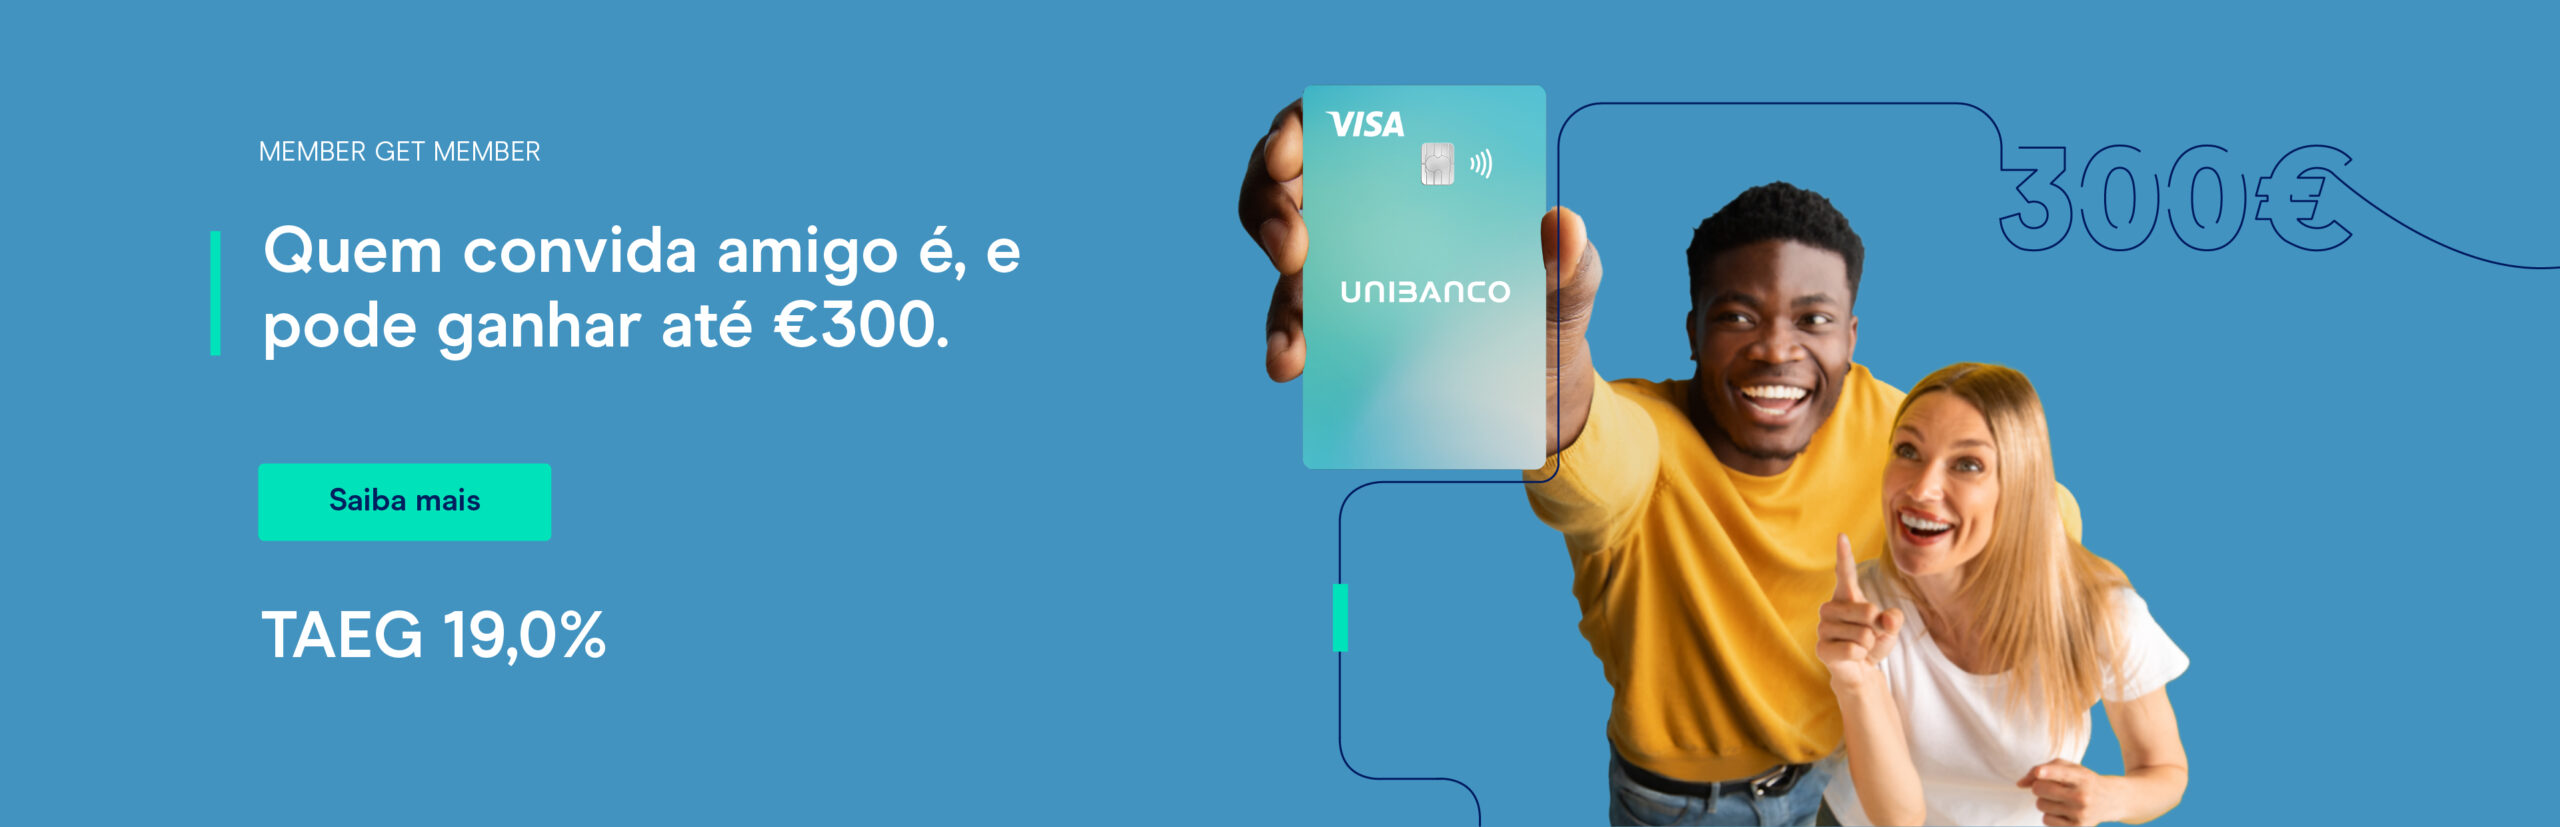 Campanha convidar amigos para aderir ao cartão de crédito UNIBANCO